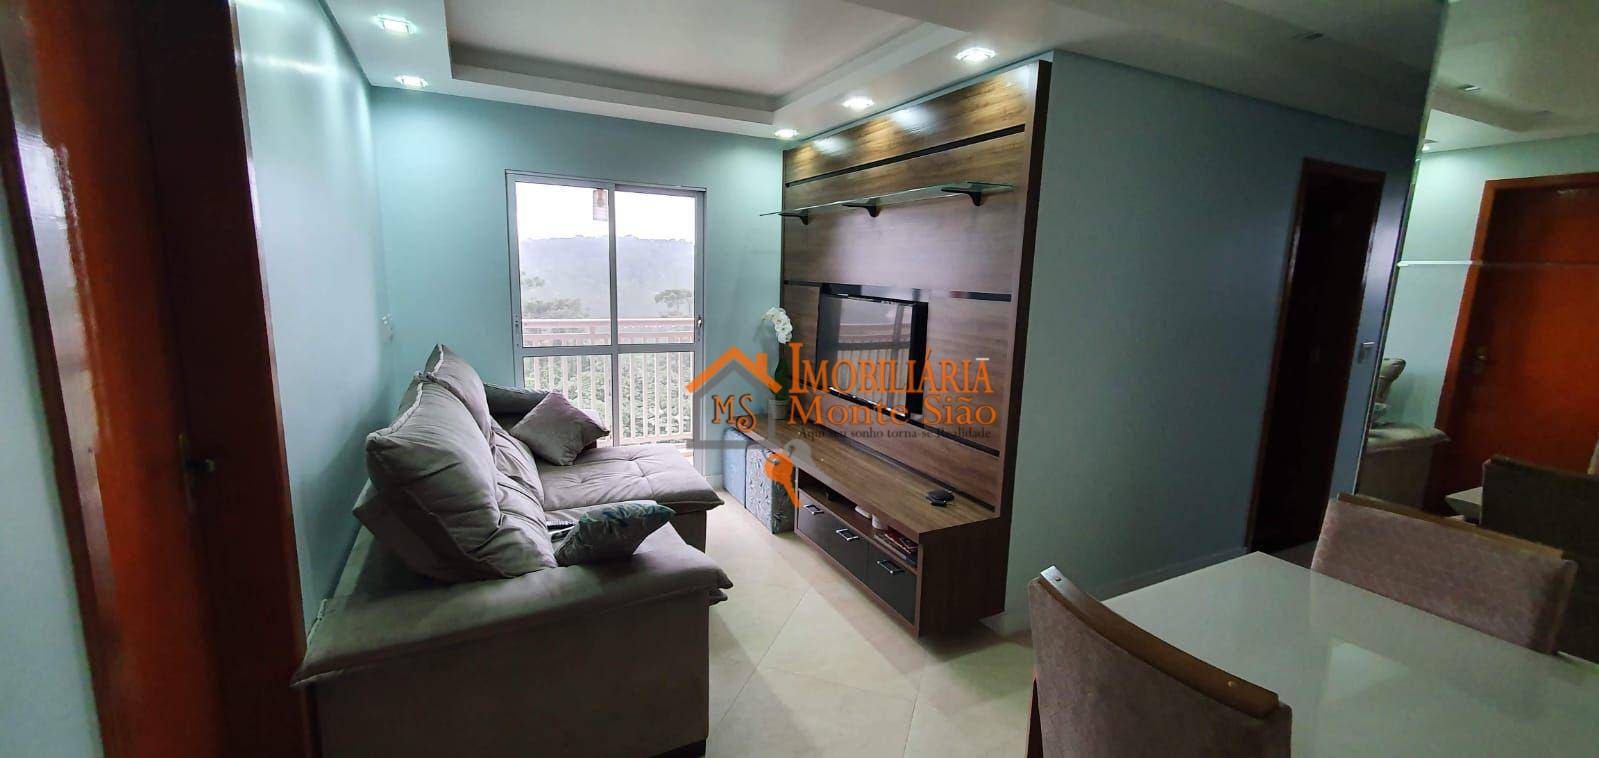 Apartamento com 3 dormitórios à venda, 64 m² por R$ 424.000,00 - Carmela III - Guarulhos/SP